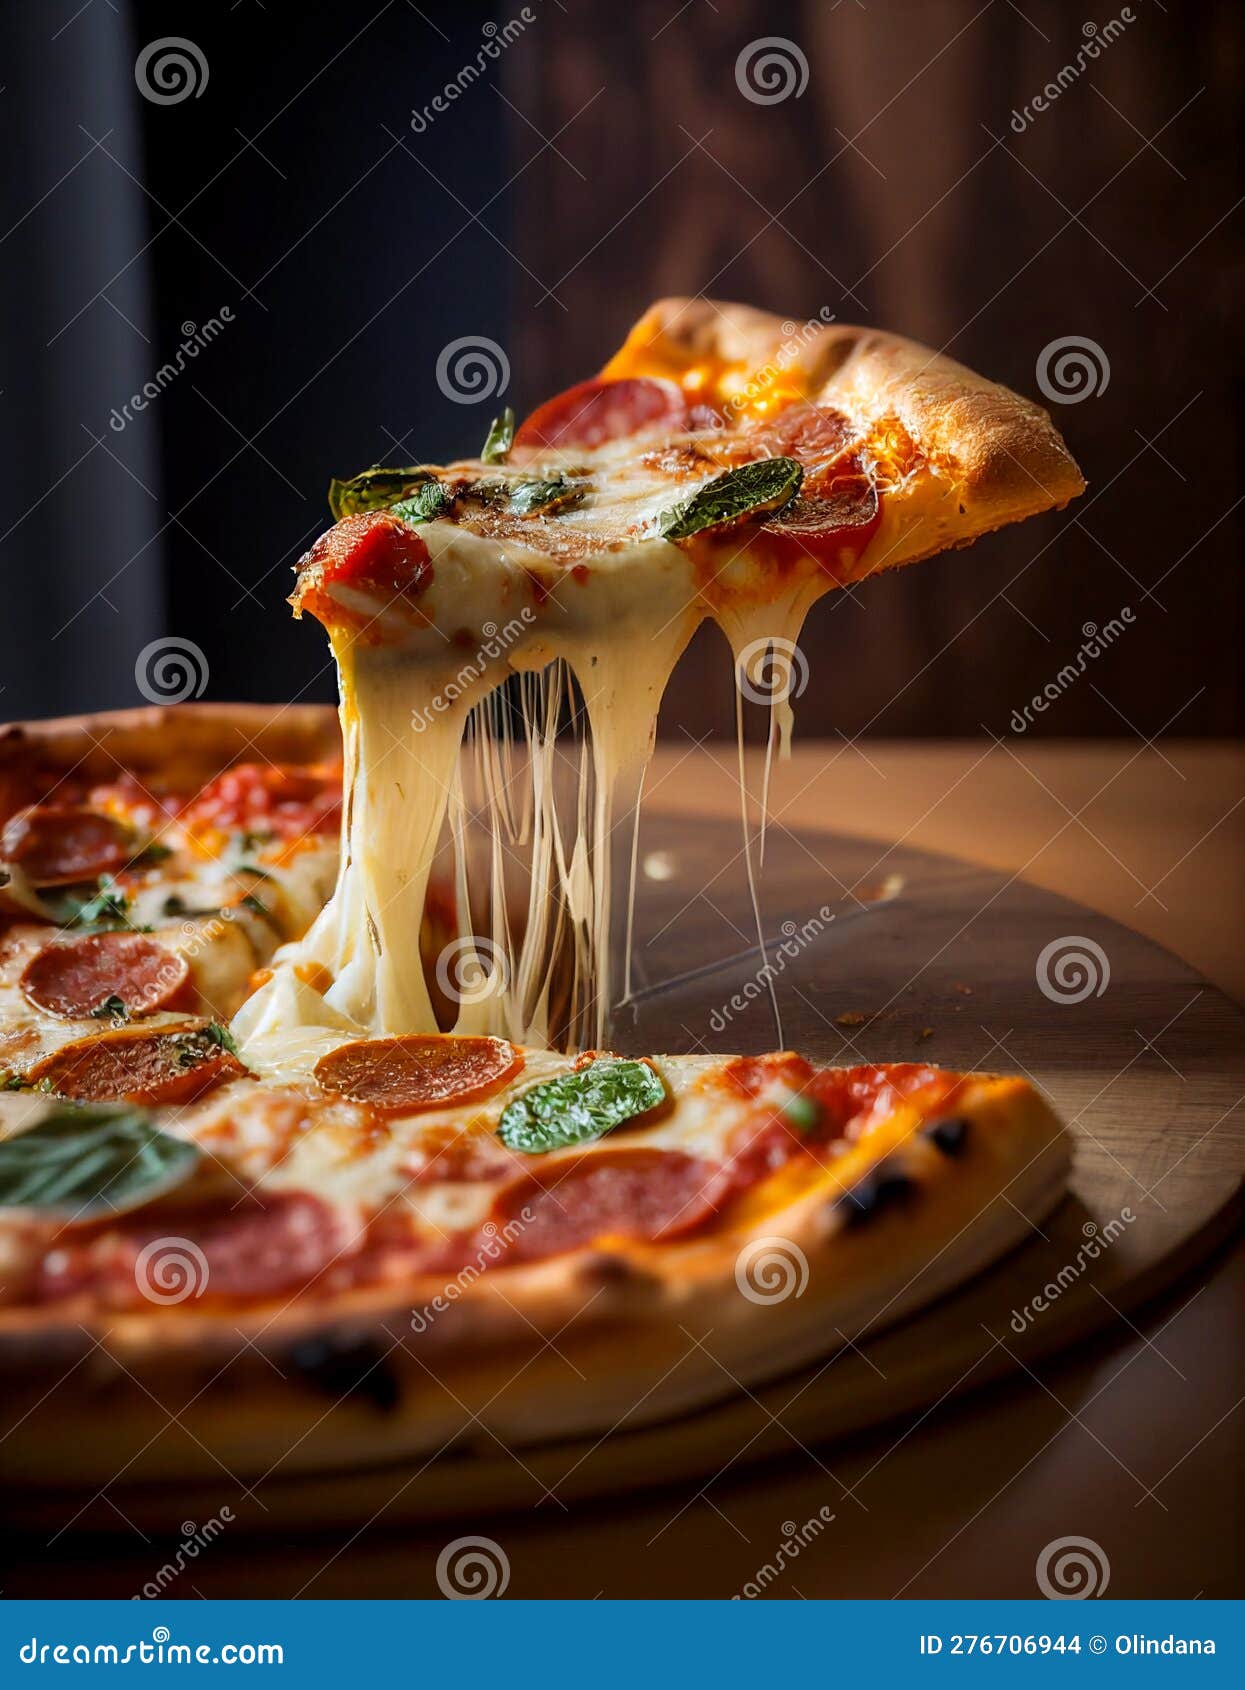 Délicieuse Pizza Pepperoni Authentique Au Basilic Frais Et Fromage